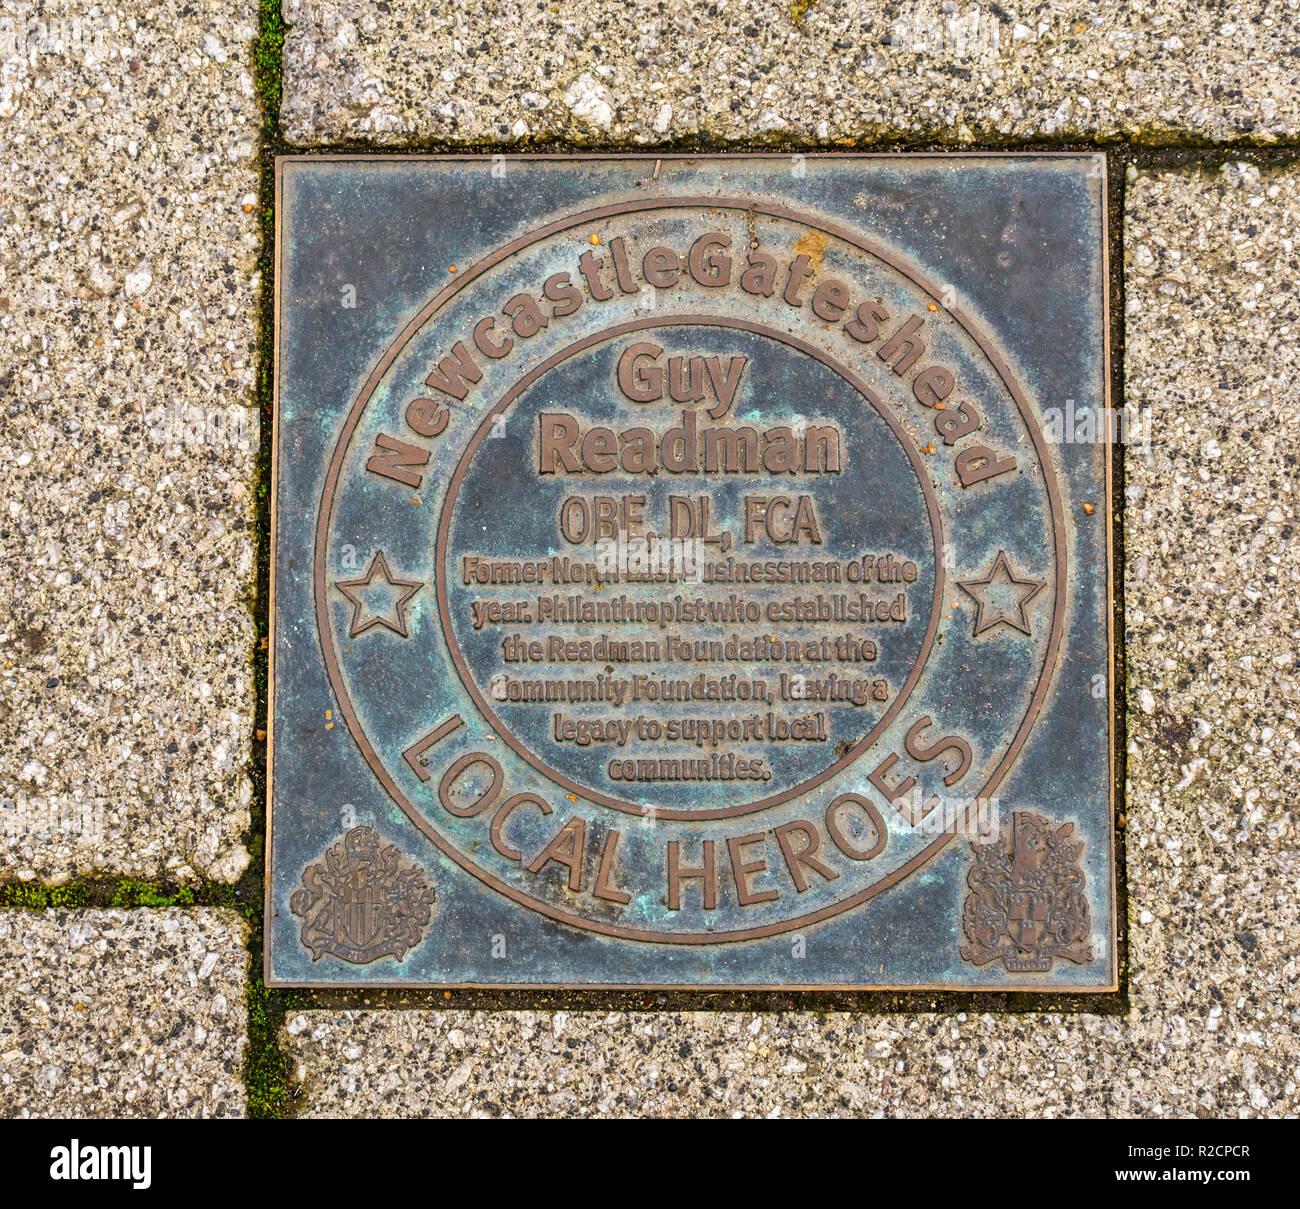 Targa di bronzo in onore di Newcastle Gateshead e ispirare le persone di 60 anni passati, Guy Readman, Quayside. Newcastle Upon Tyne, England, Regno Unito Foto Stock